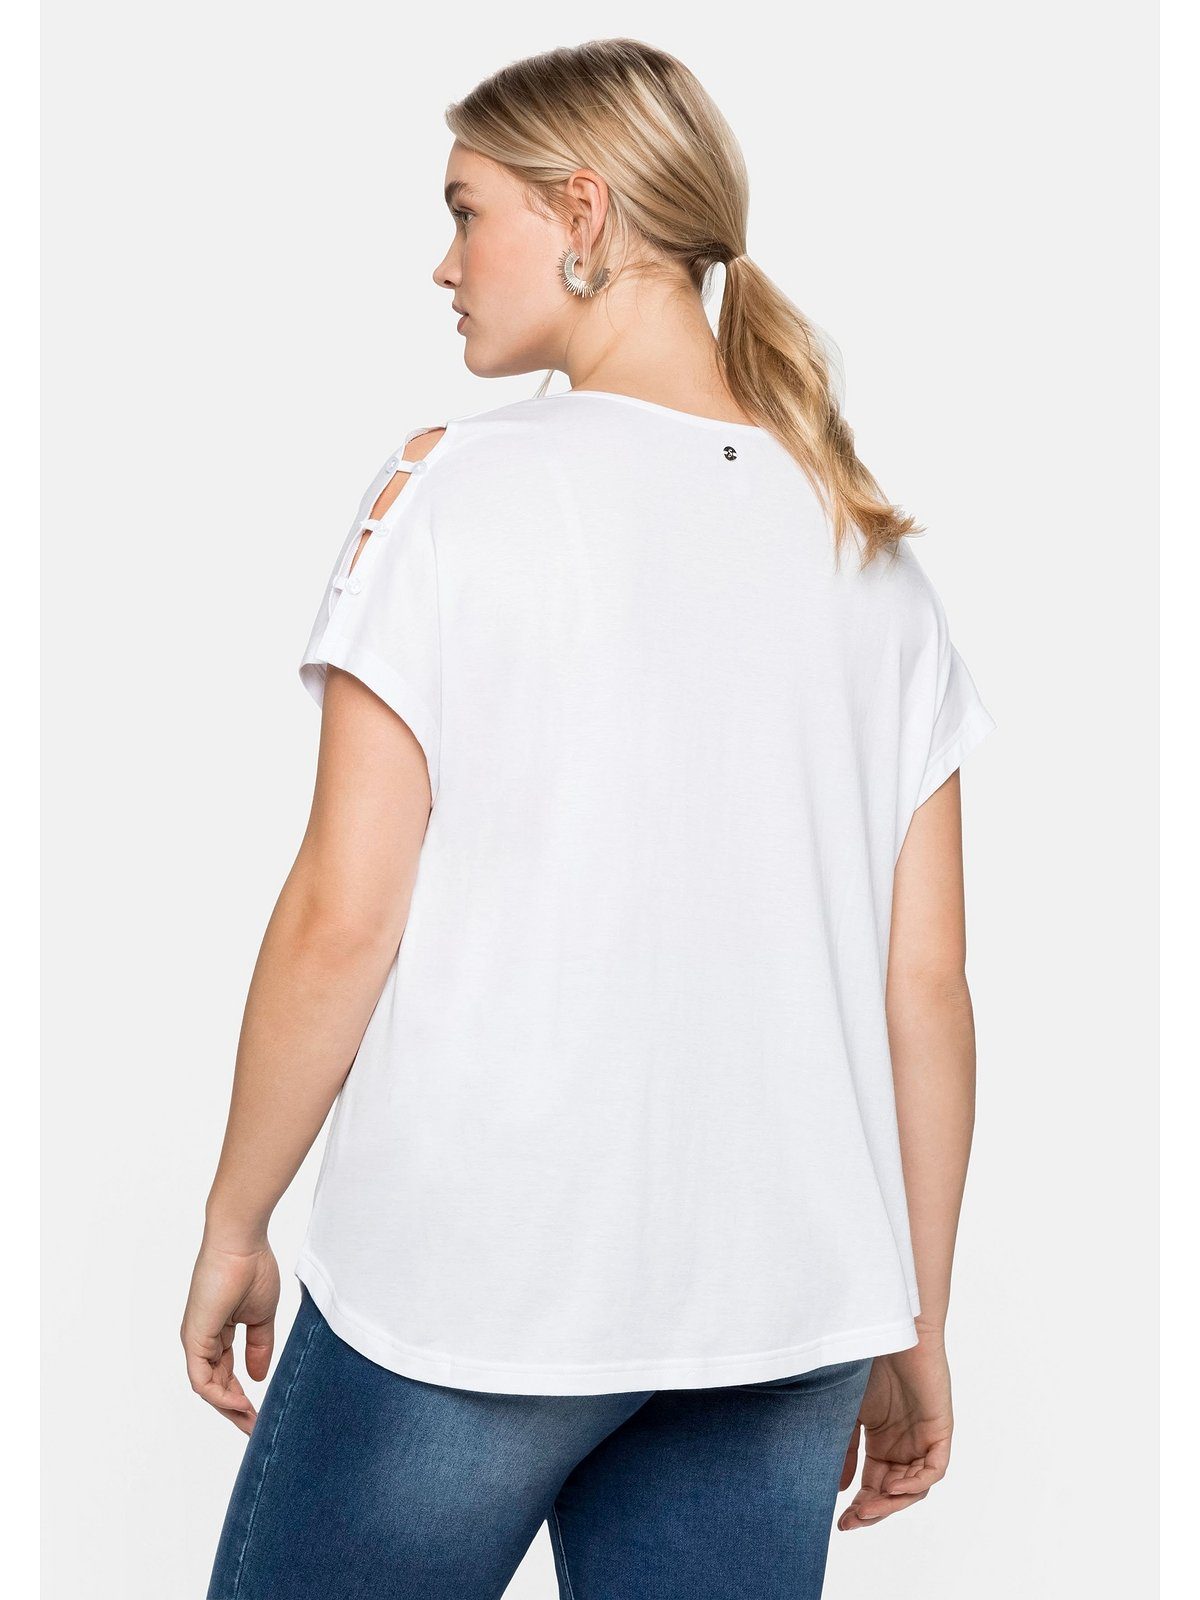 T-Shirt mit Größen A-Linie Große in leichter Schulterpartie, Sheego offener weiß